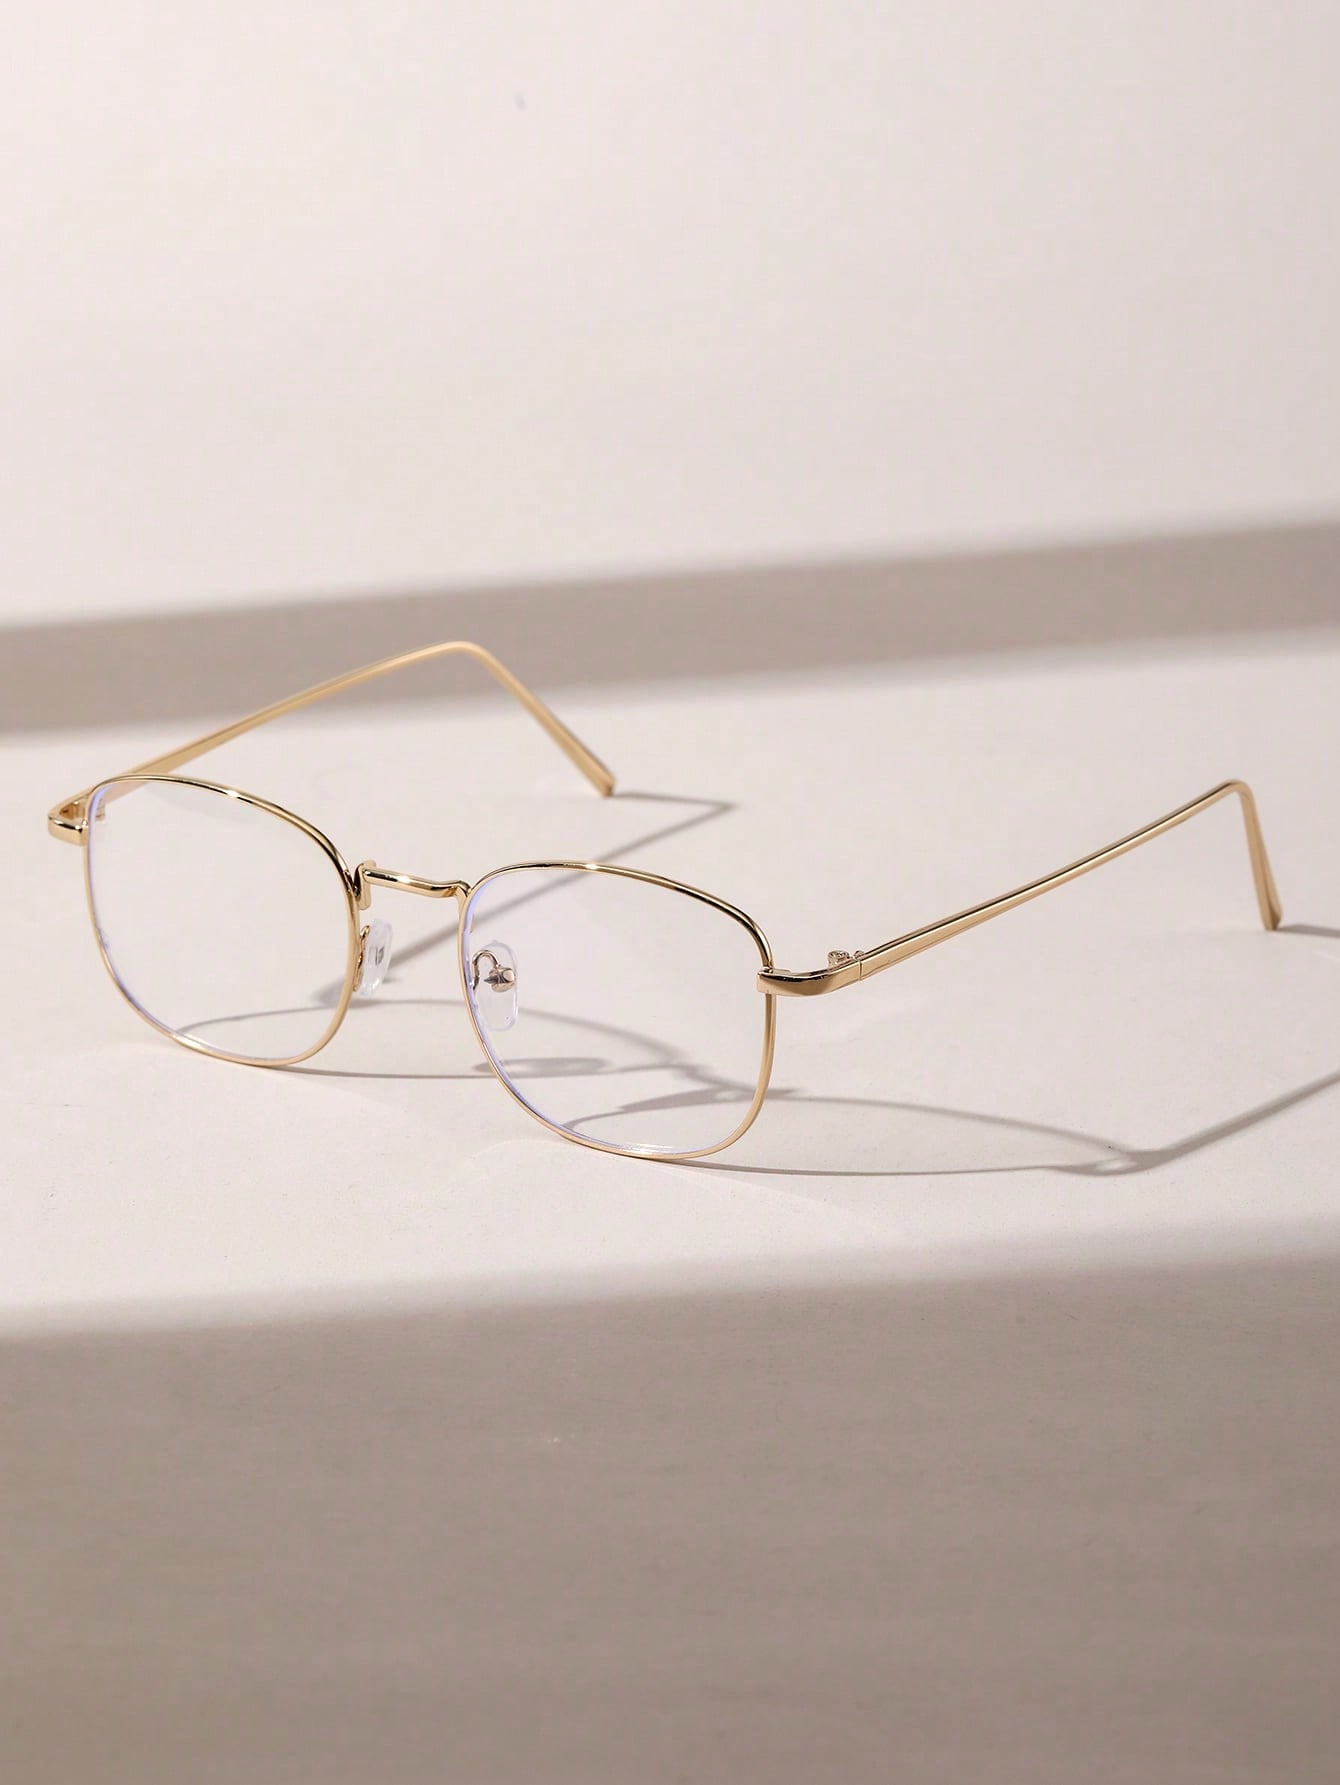 1 шт. женские геометрические медные оправы модные простые классические деловые очки для чтения в полуоправе светильник защитой от синего света ульсветильник очки для защиты глаз